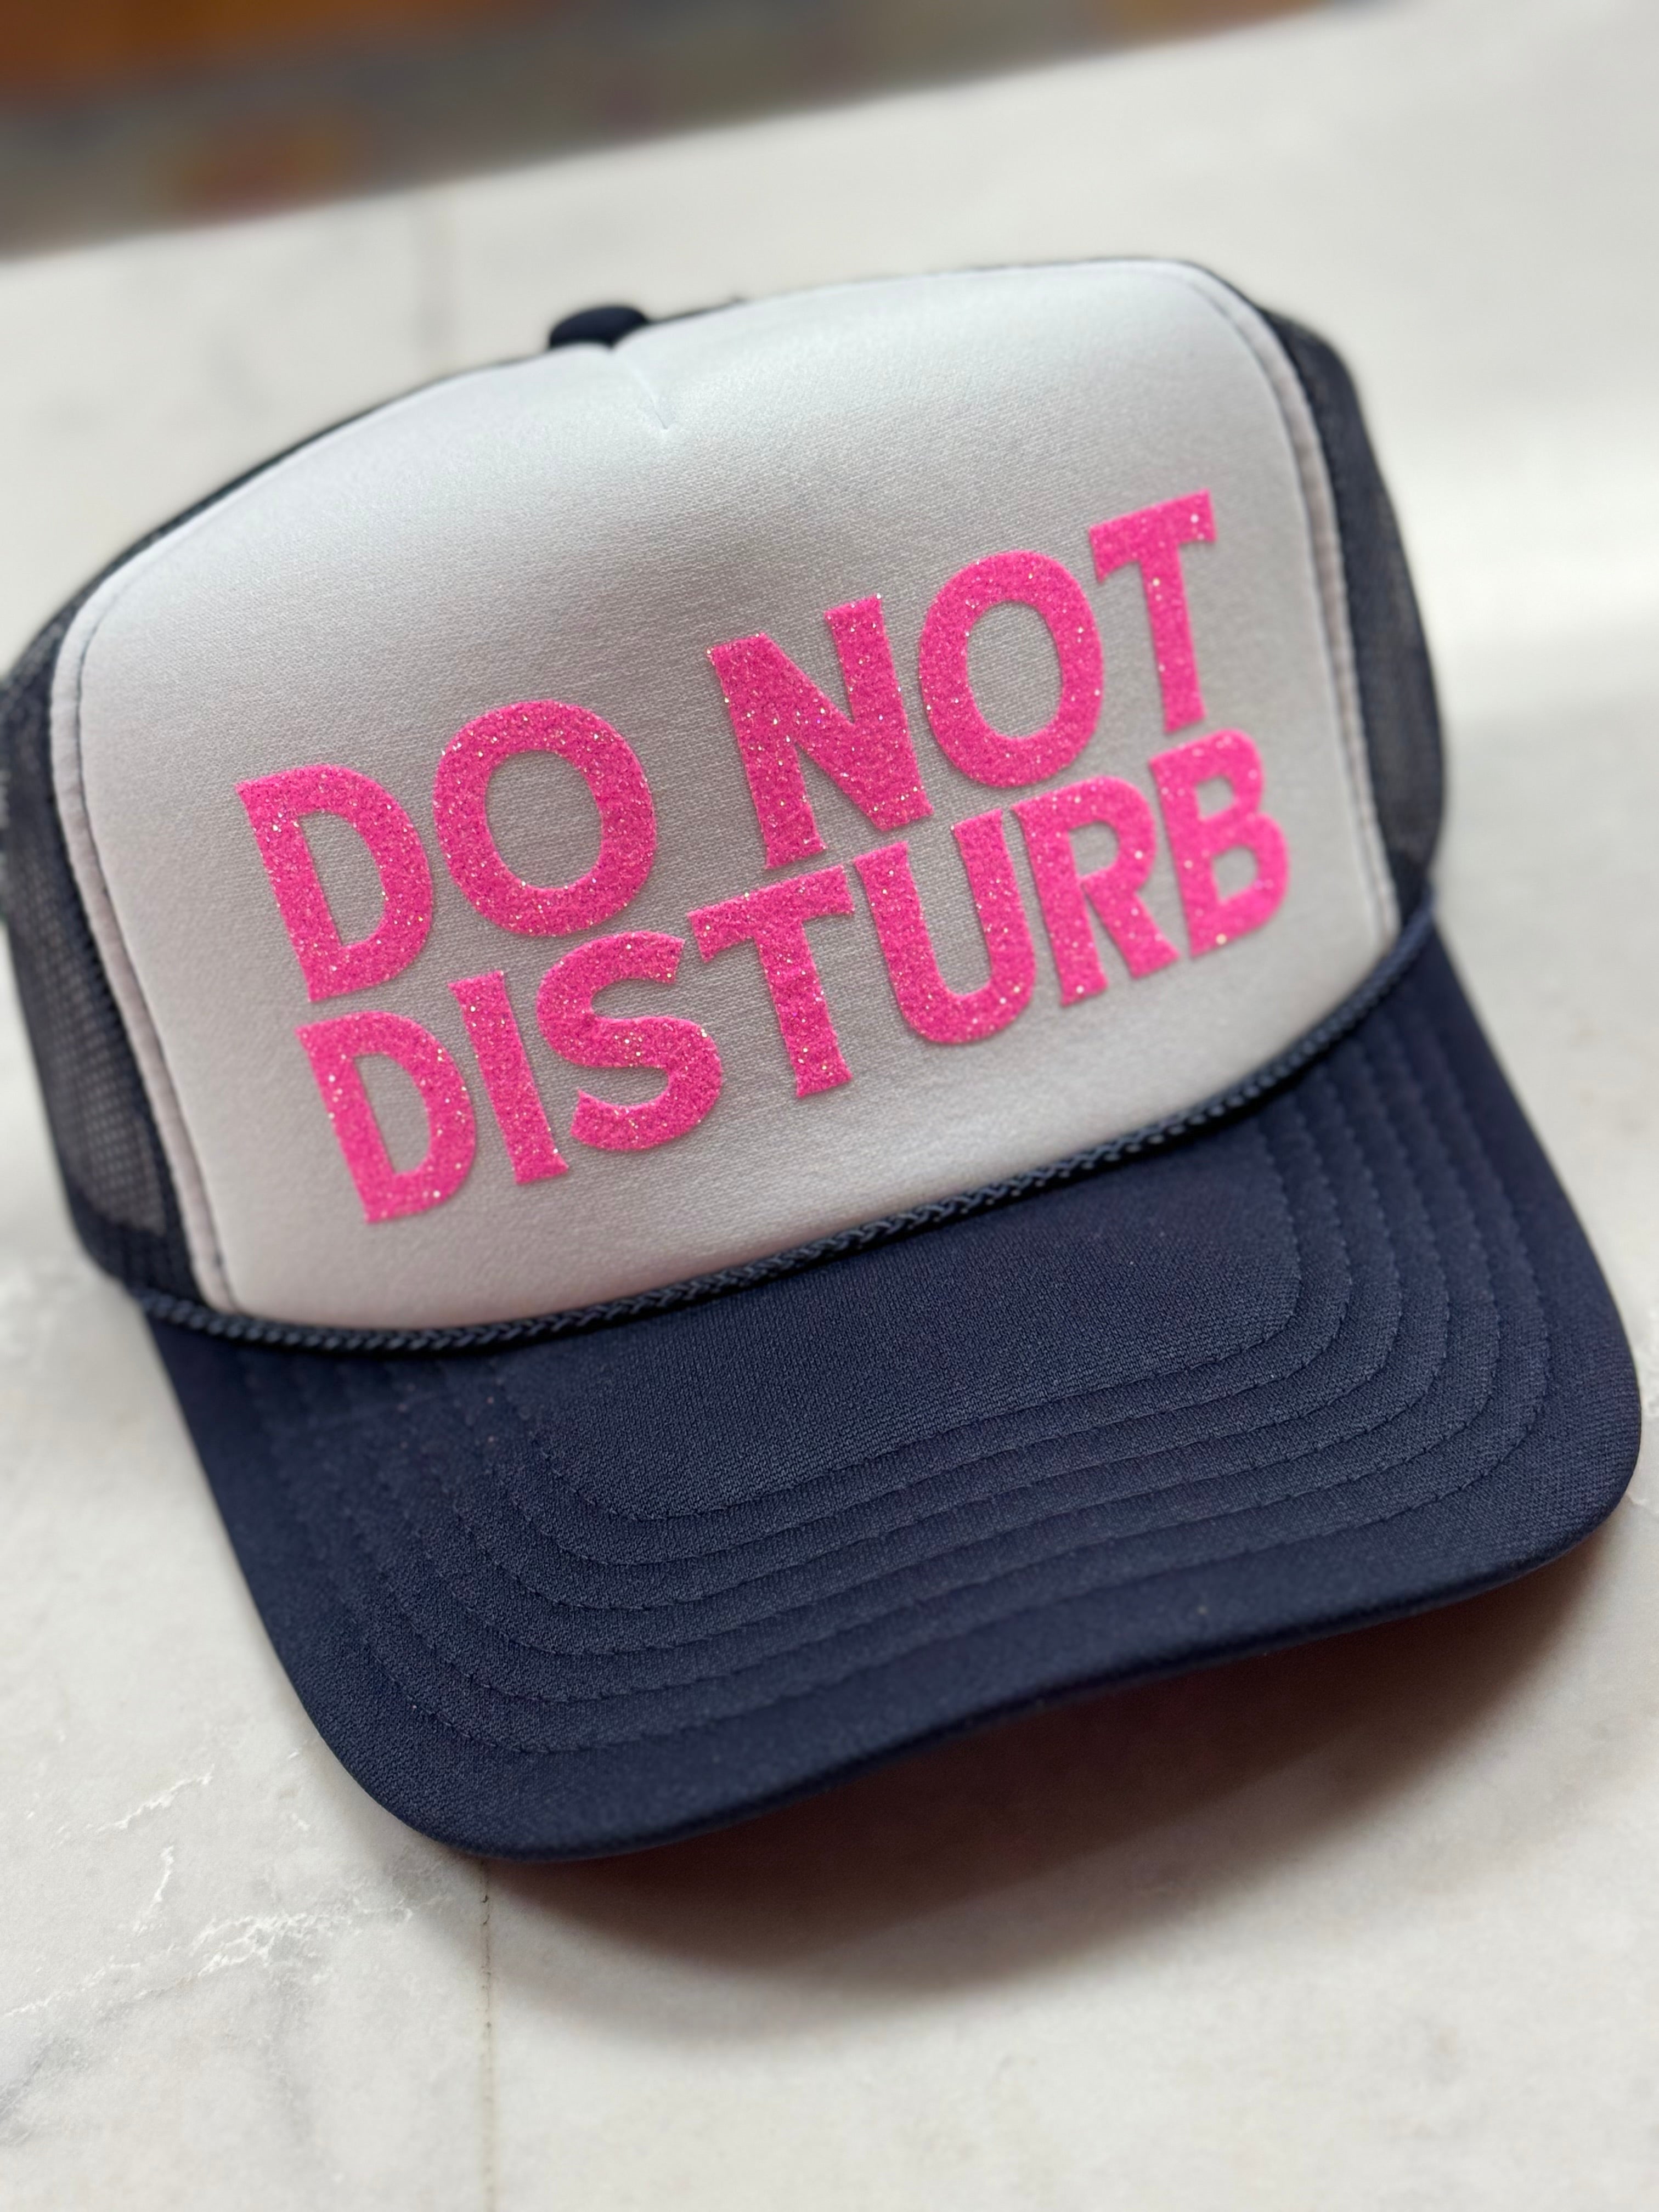 Do Not Disturb Hat